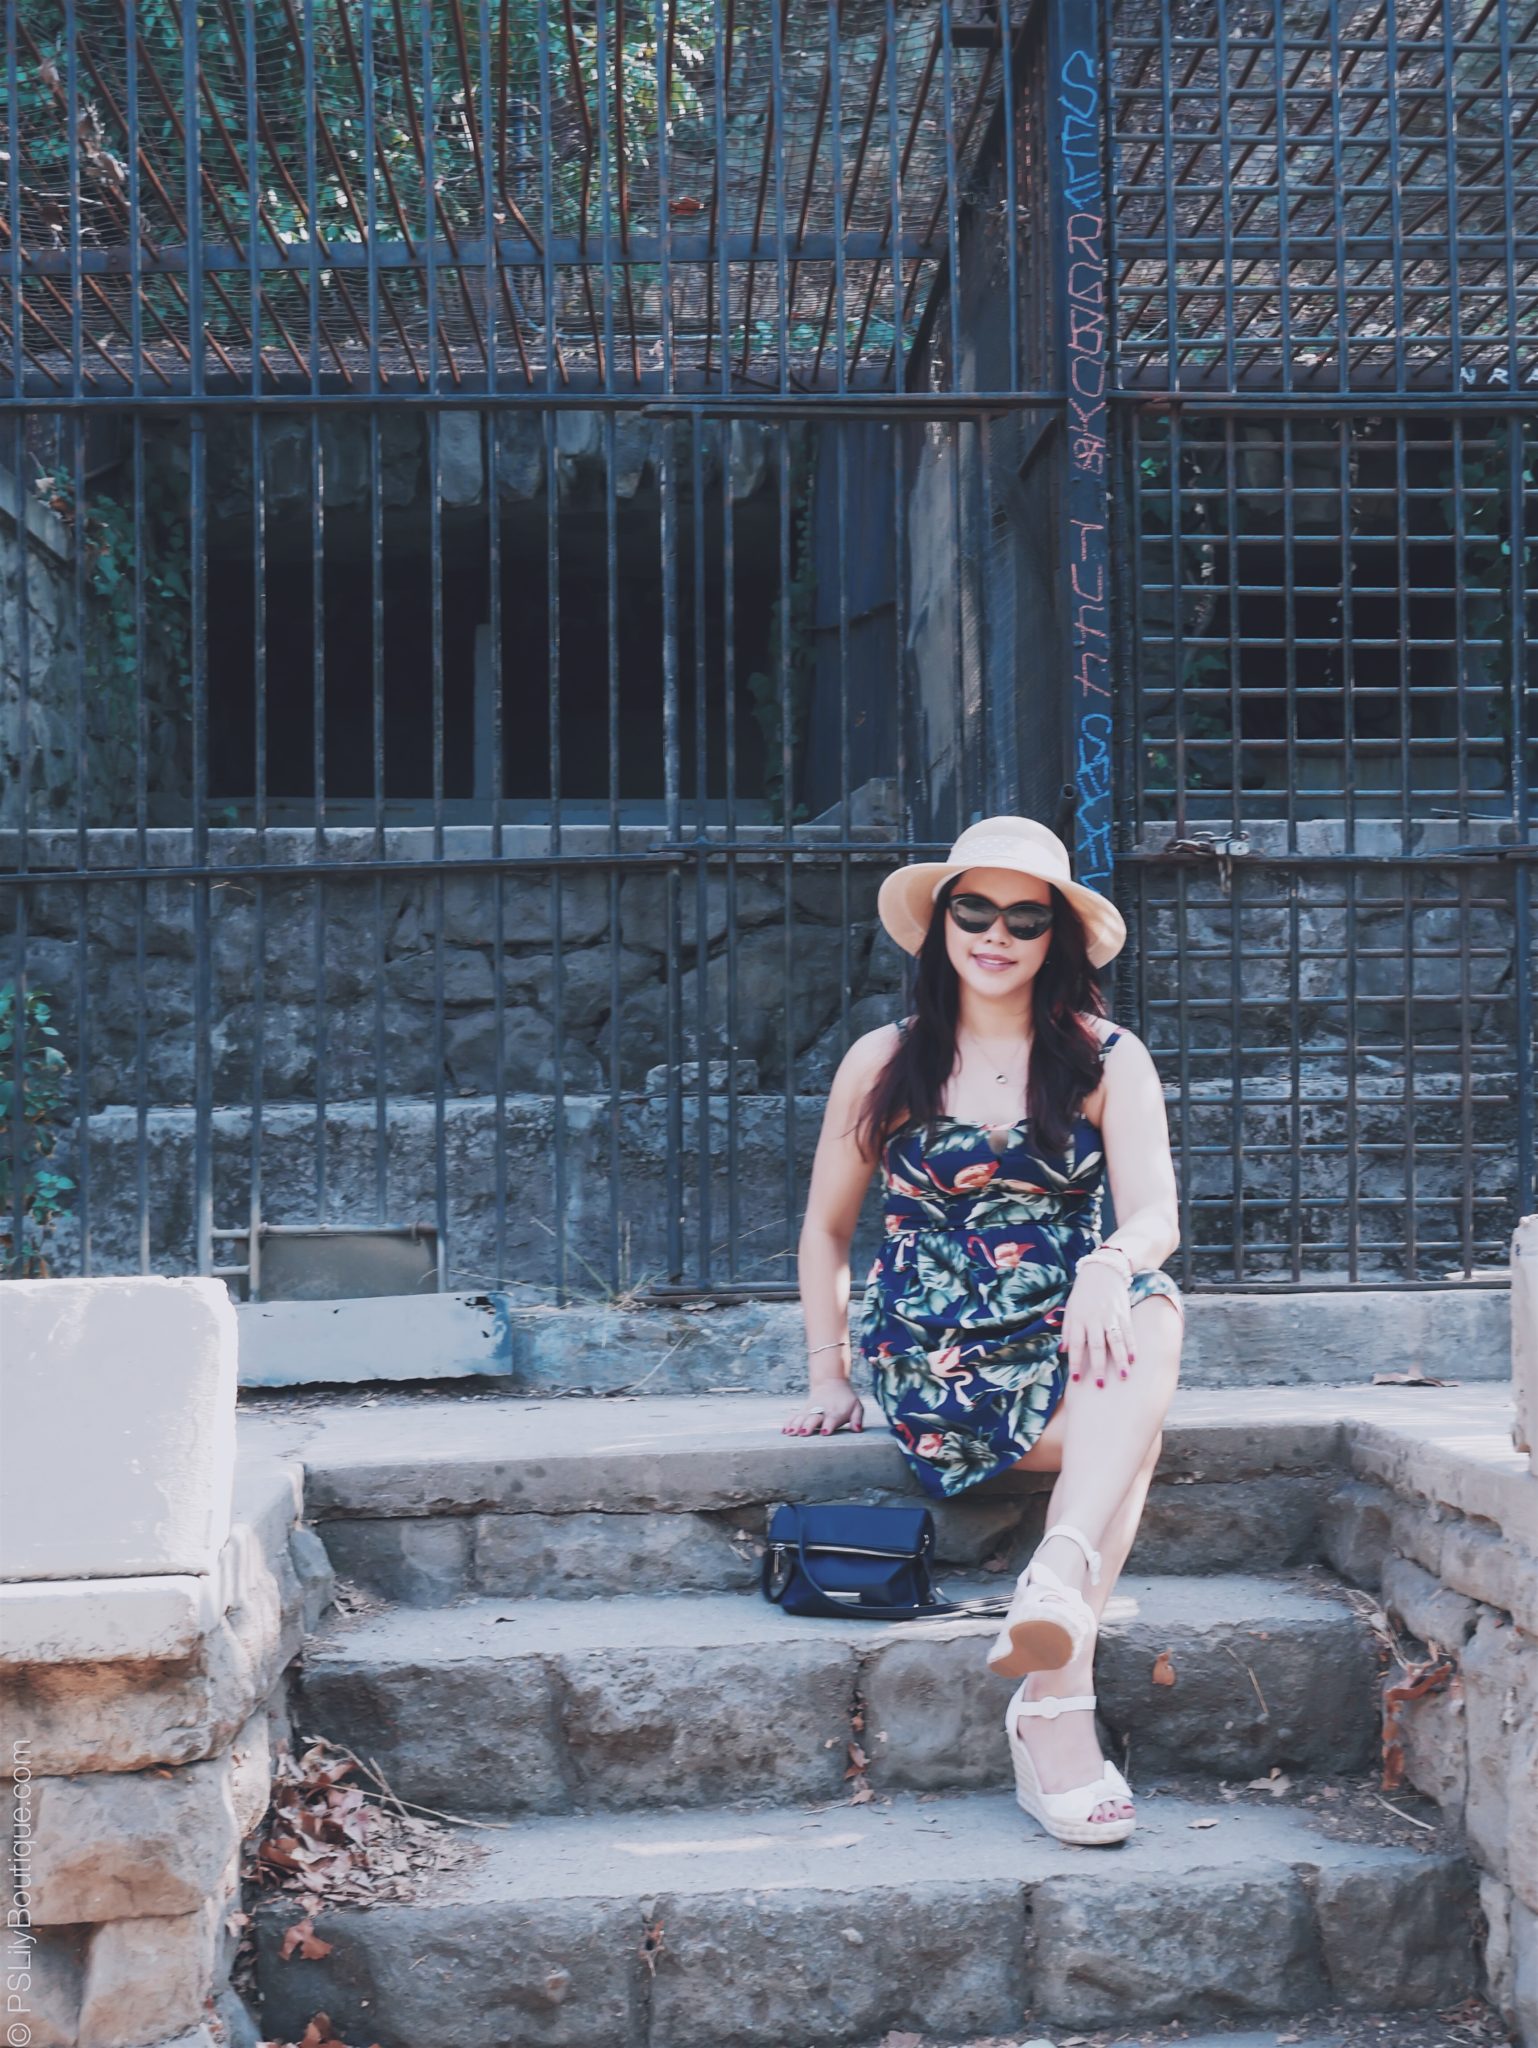 pslilyboutique on instagram, tropical blue dress, fashion blogger